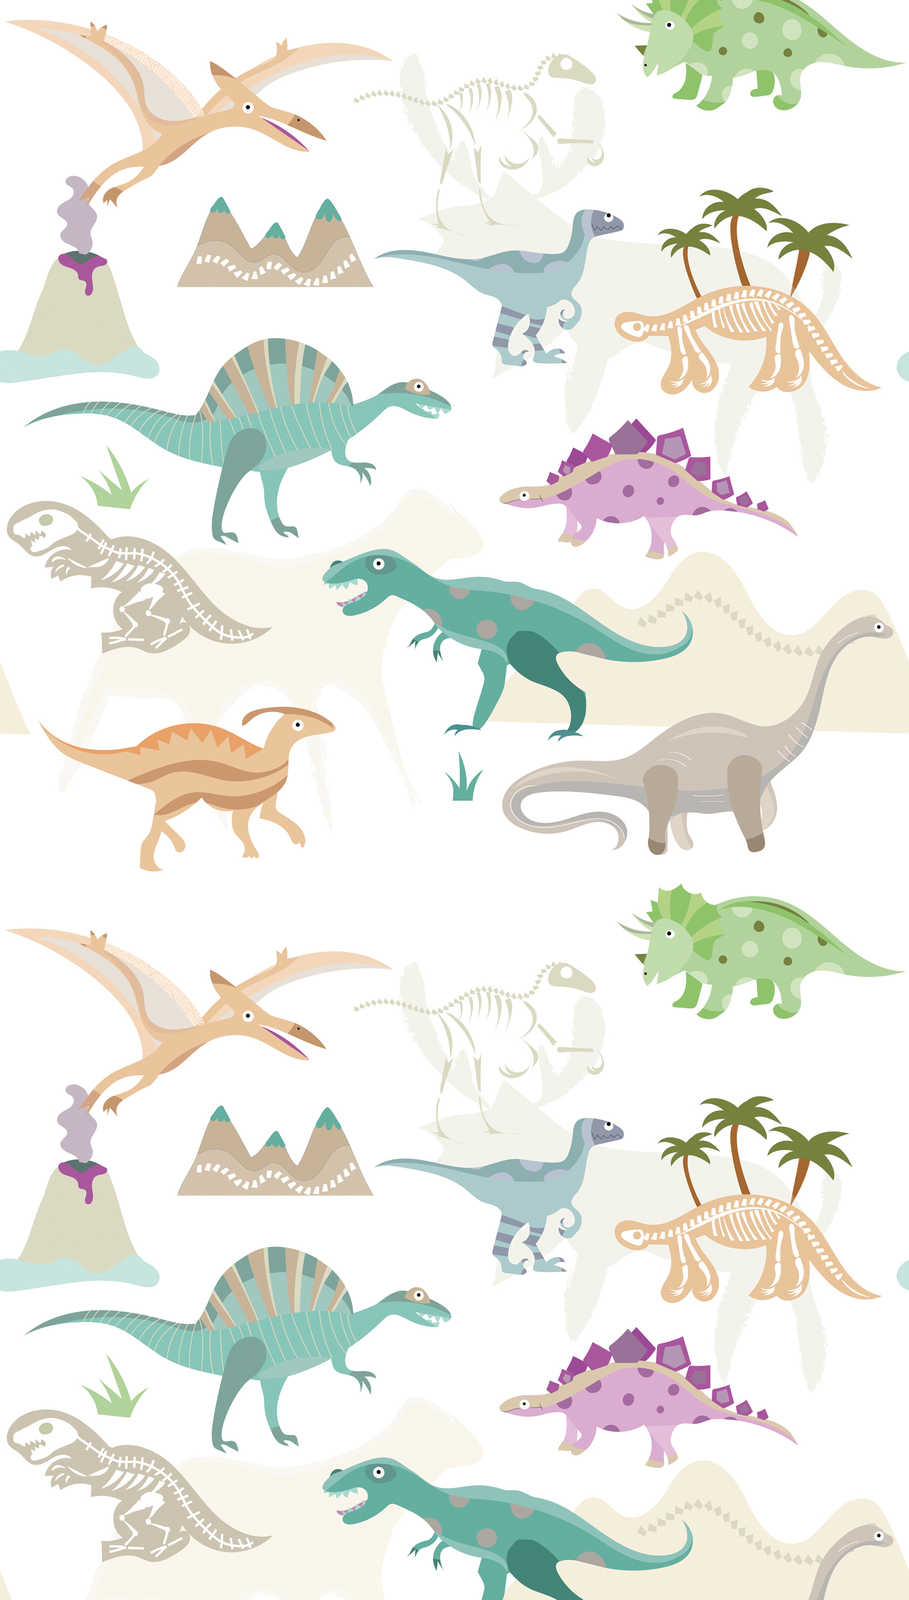             Papier peint à motifs enfants avec dinosaures et volcans - multicolore, crème, beige
        